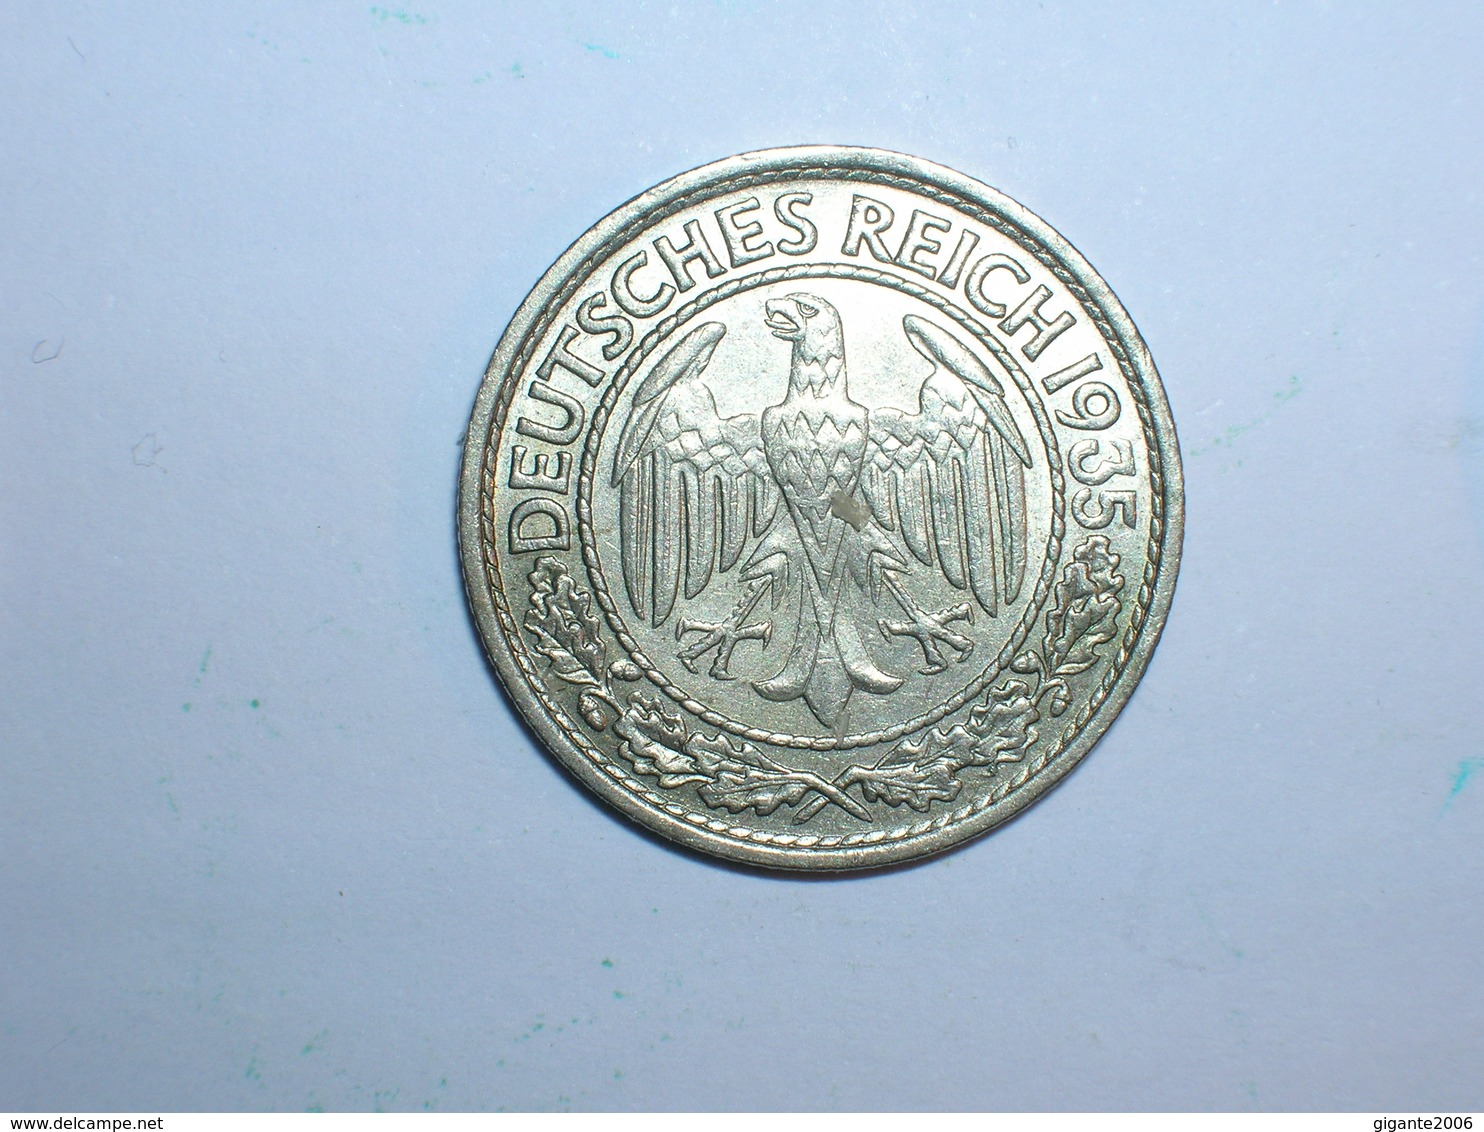 ALEMANIA 50 PFENNIG 1935 A (1261) - 50 Reichspfennig